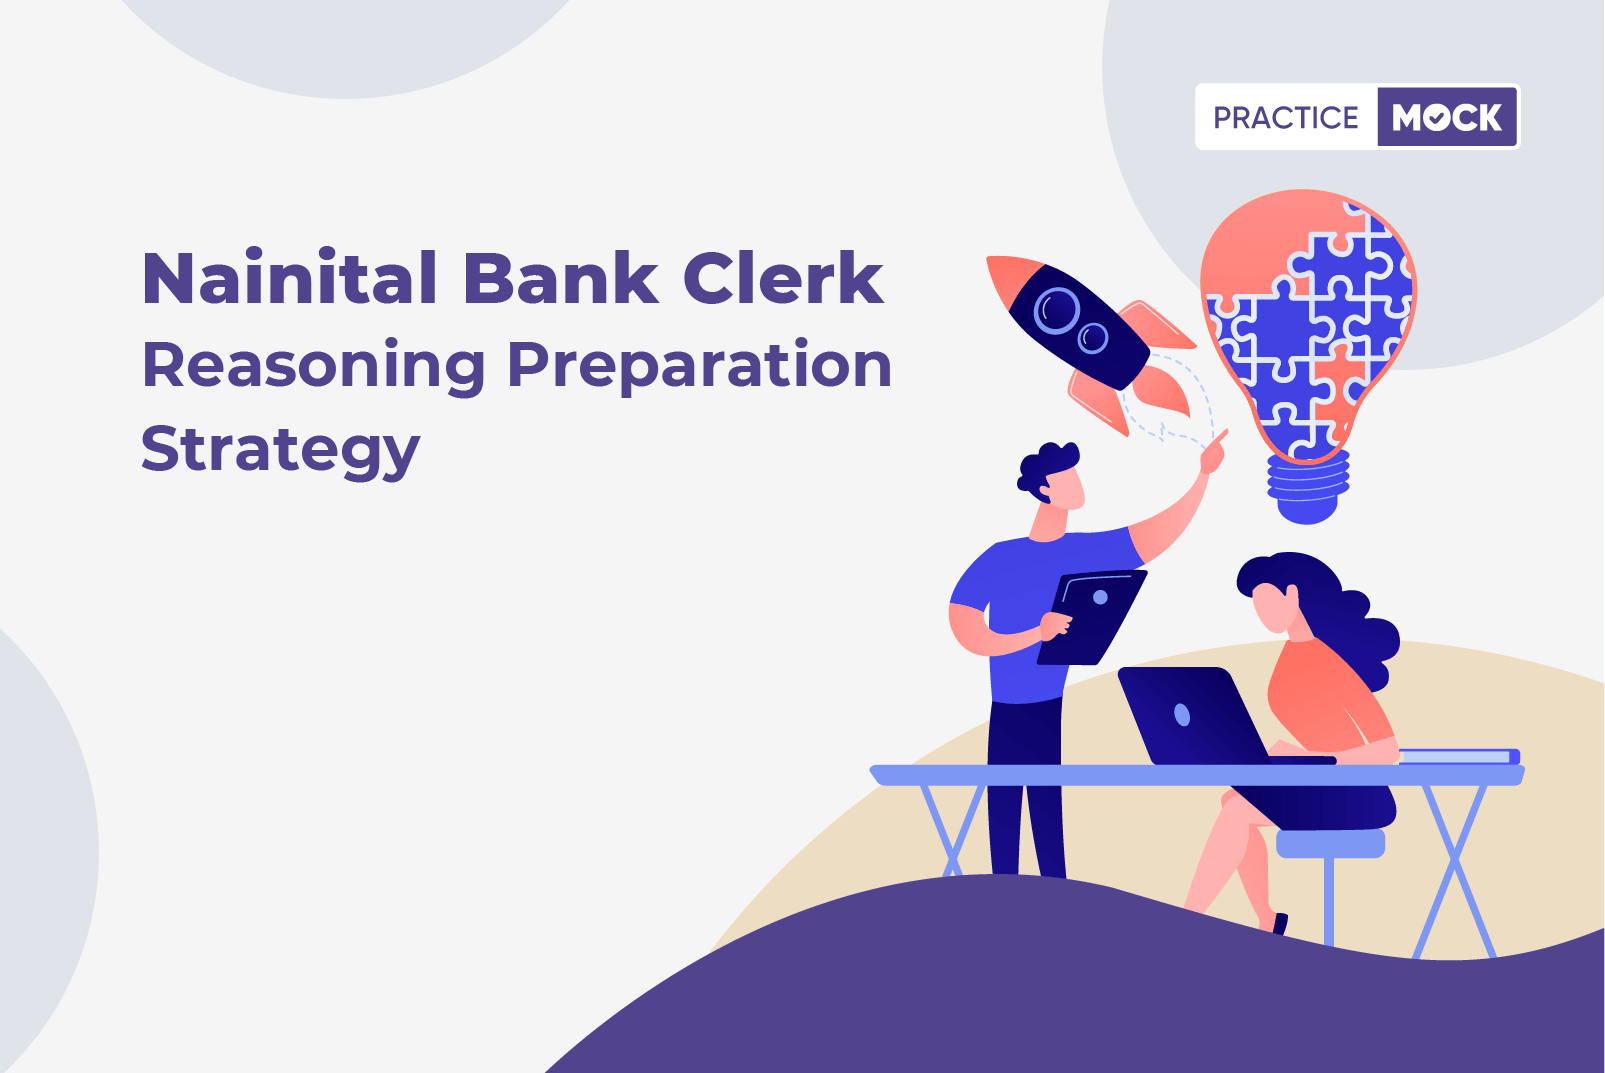 Nainital Bank Clerk Reasoning Preparation Strategy